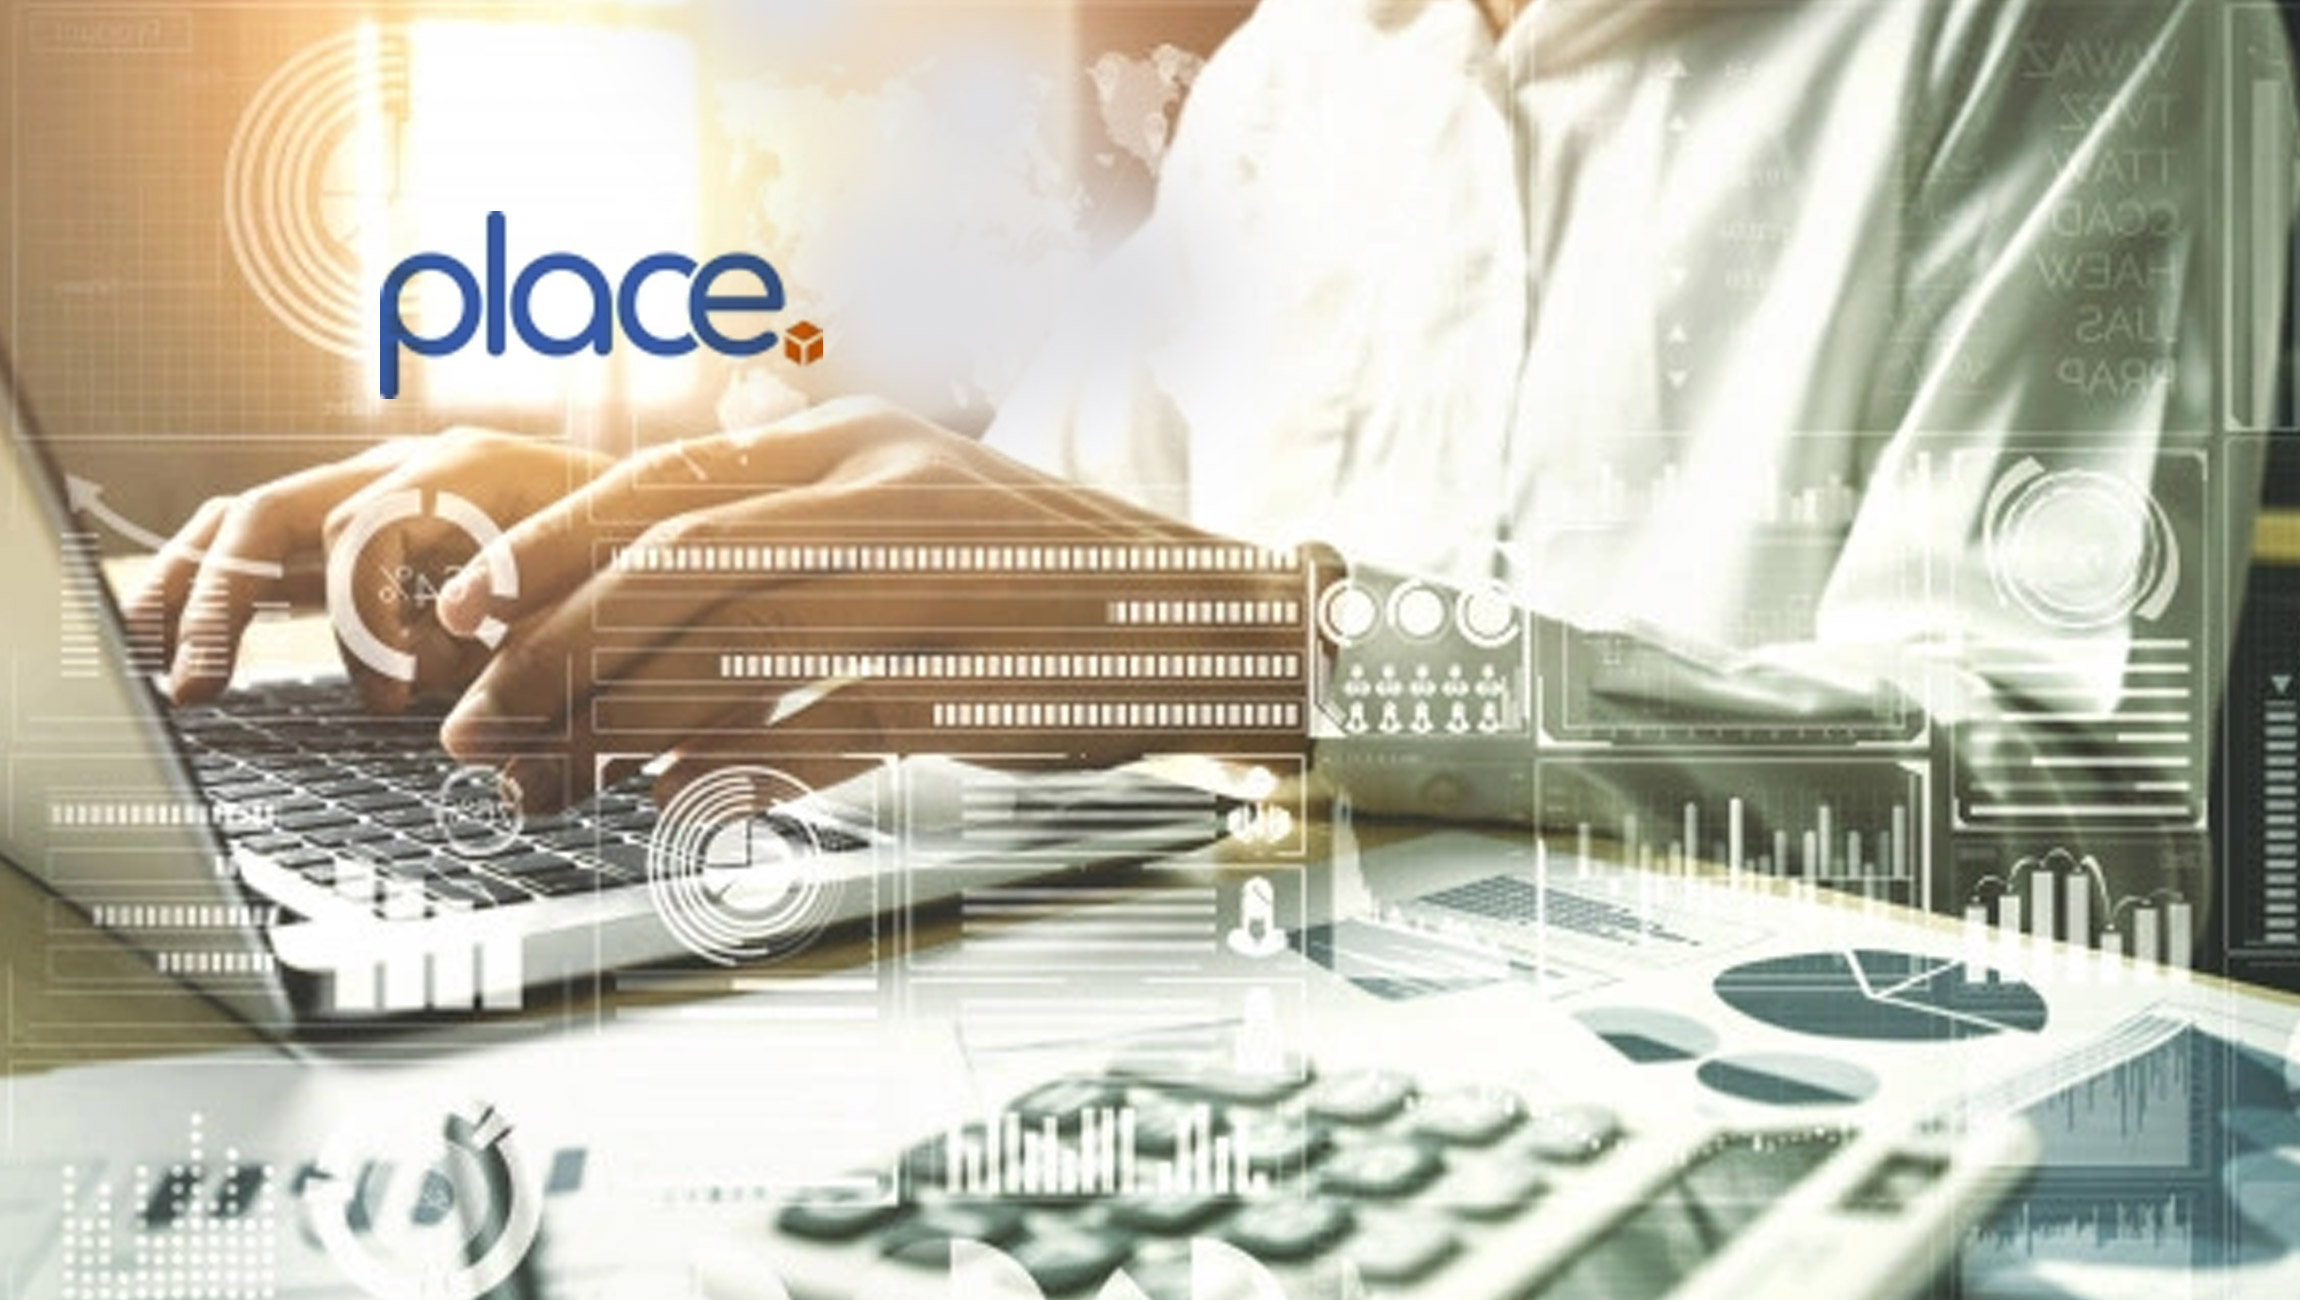 Place-Announces-Suite-of-Revenue-Management-Features-for-SaaS-Companies